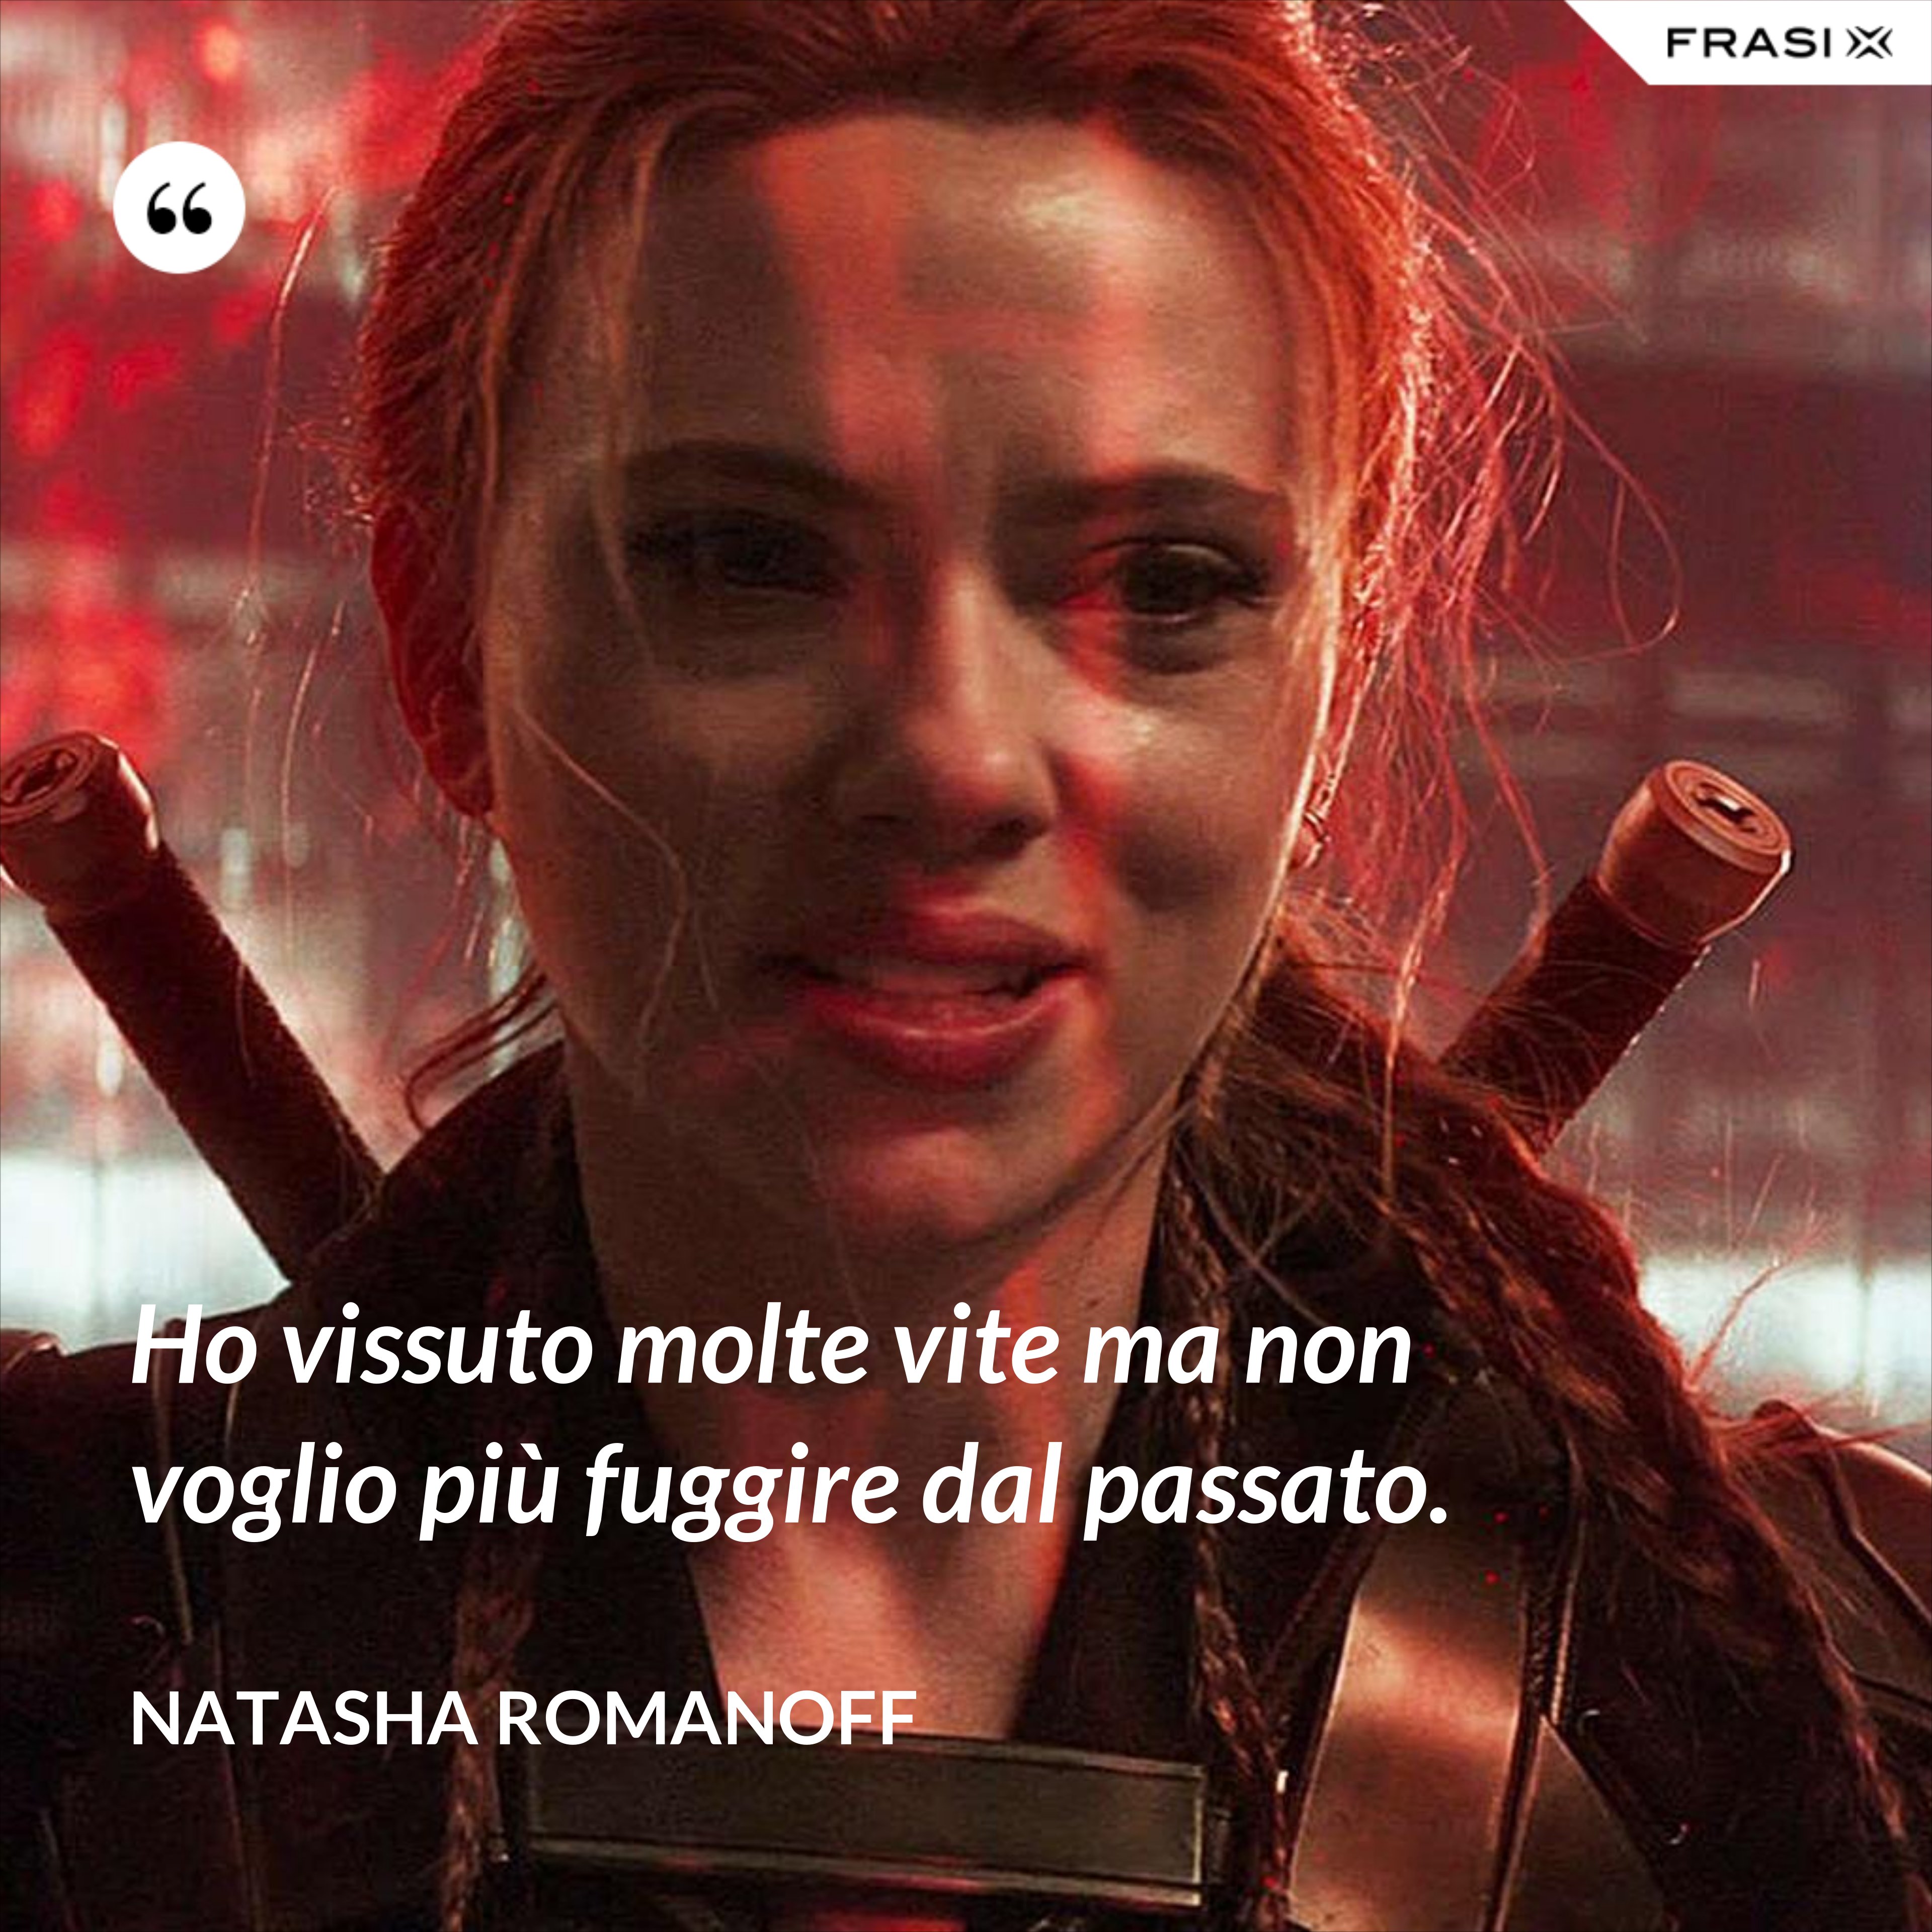 Ho vissuto molte vite ma non voglio più fuggire dal passato. - Natasha Romanoff